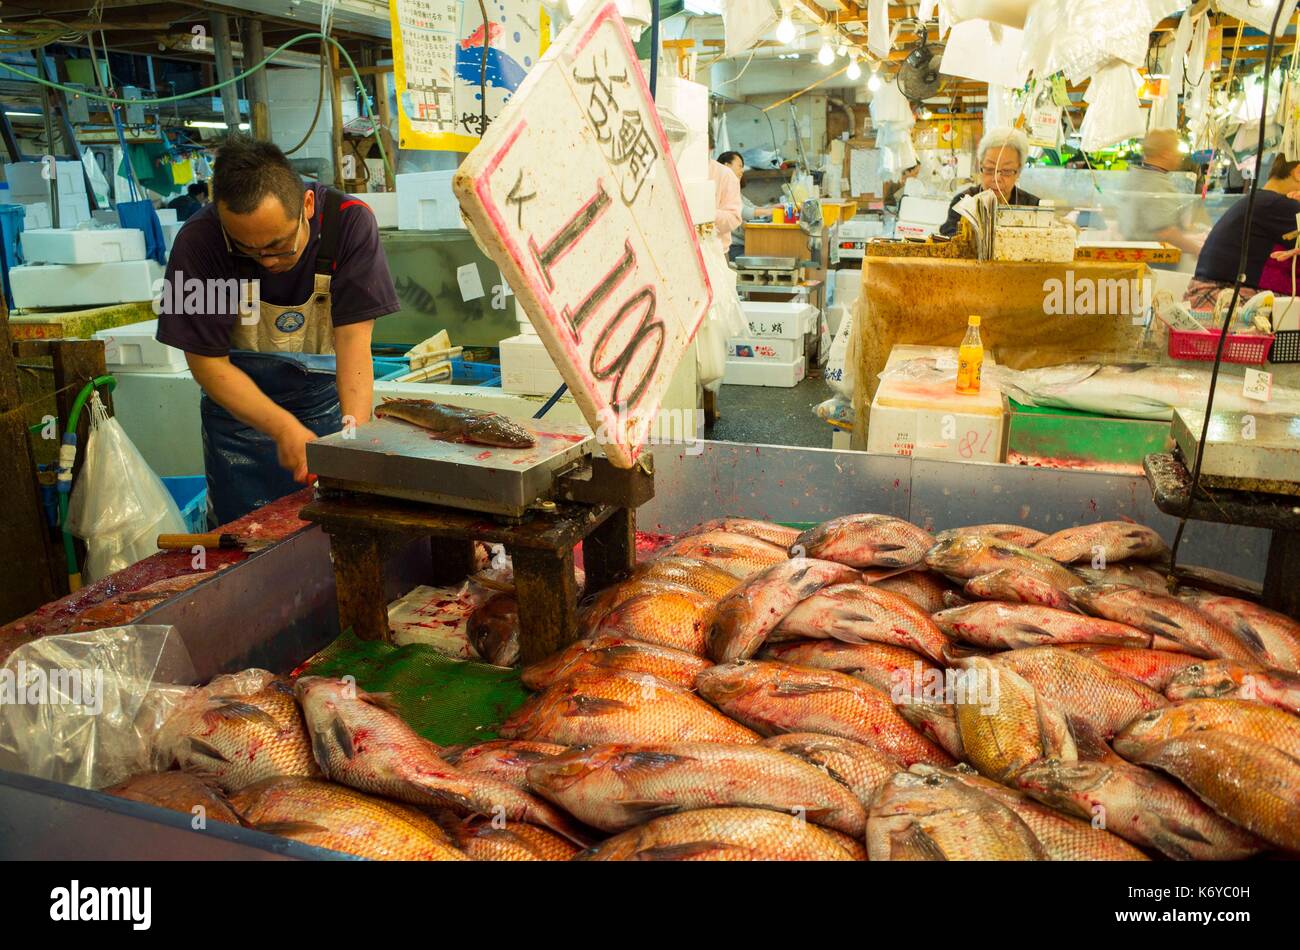 Giappone, Tokyo, il mercato del pesce di Tsukiji, la più grande del mondo al mercato del pesce con un multi miliardi di dollari di fatturato annuo, famoso per la sua asta di tonno Foto Stock